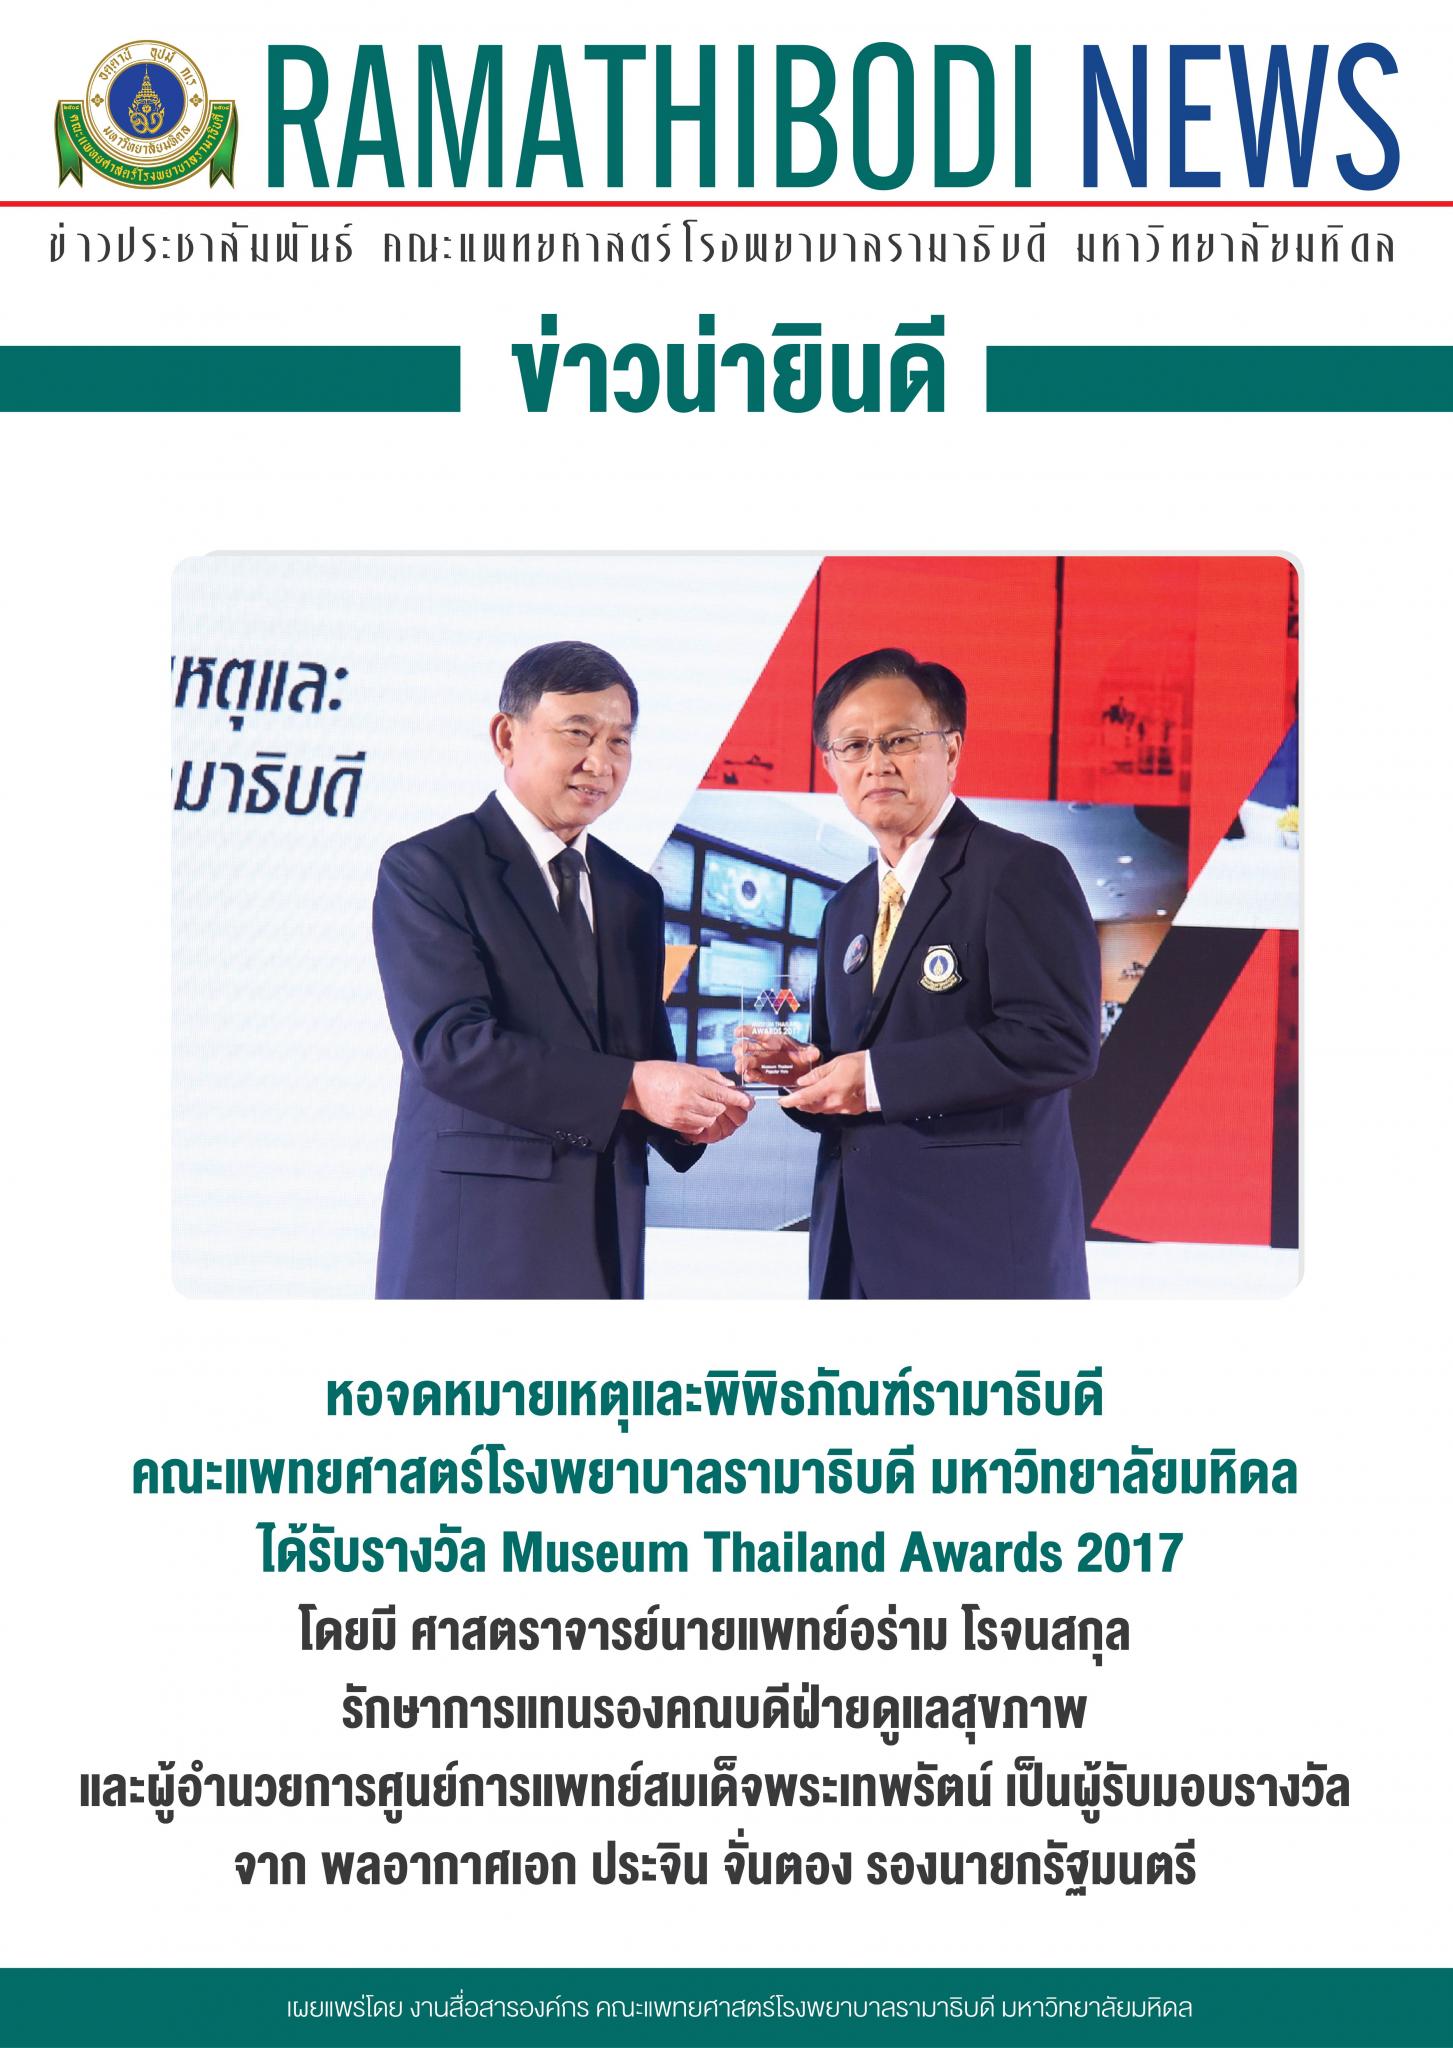 ข่าวน่ายินดี หอจดหมายเหตุและพิพิธภัณฑ์รามาธิบดี รับรางวัล Museum Thailand Awards 2017